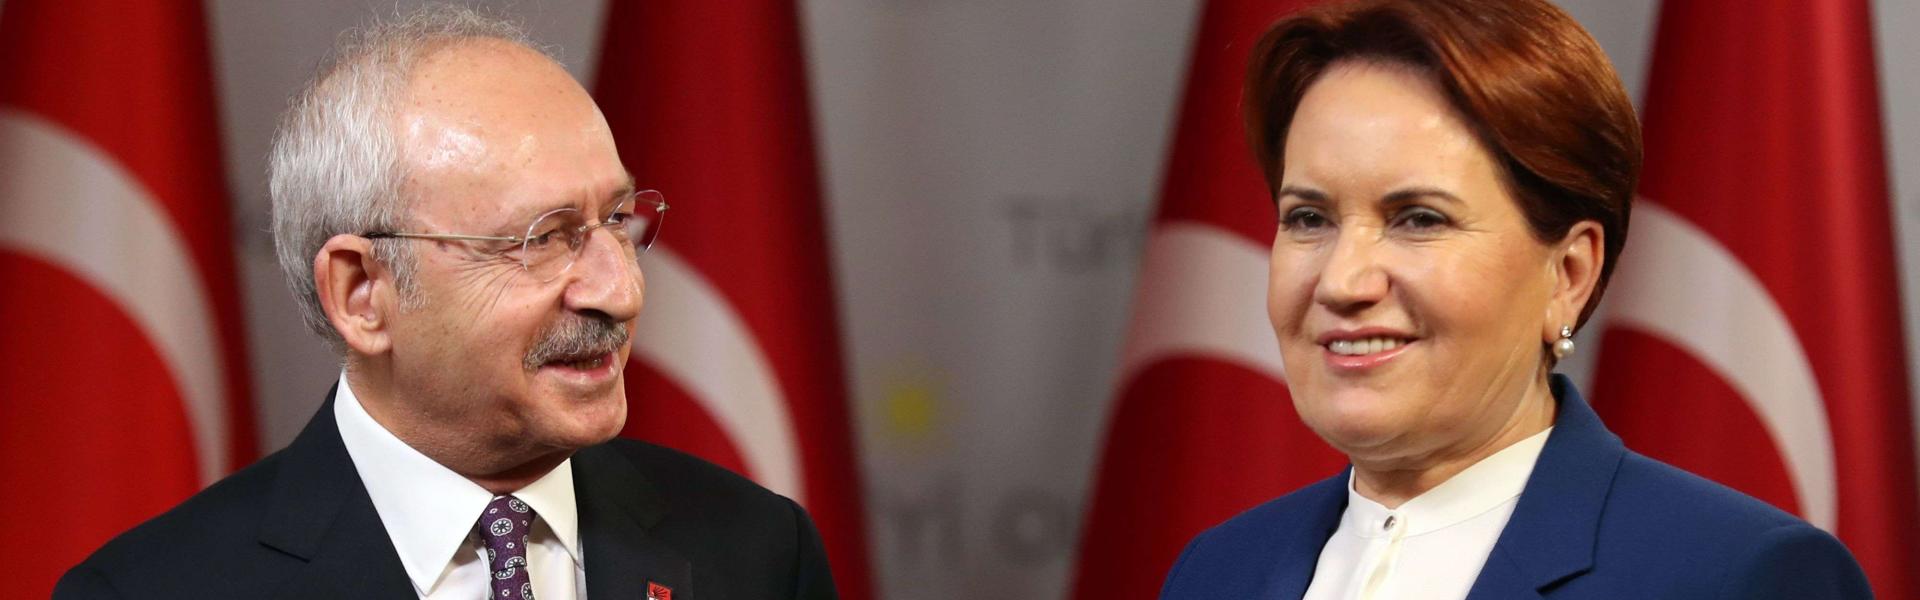 Erdoğan Twitter post accuses Turkish opposition of treason, terror links 20